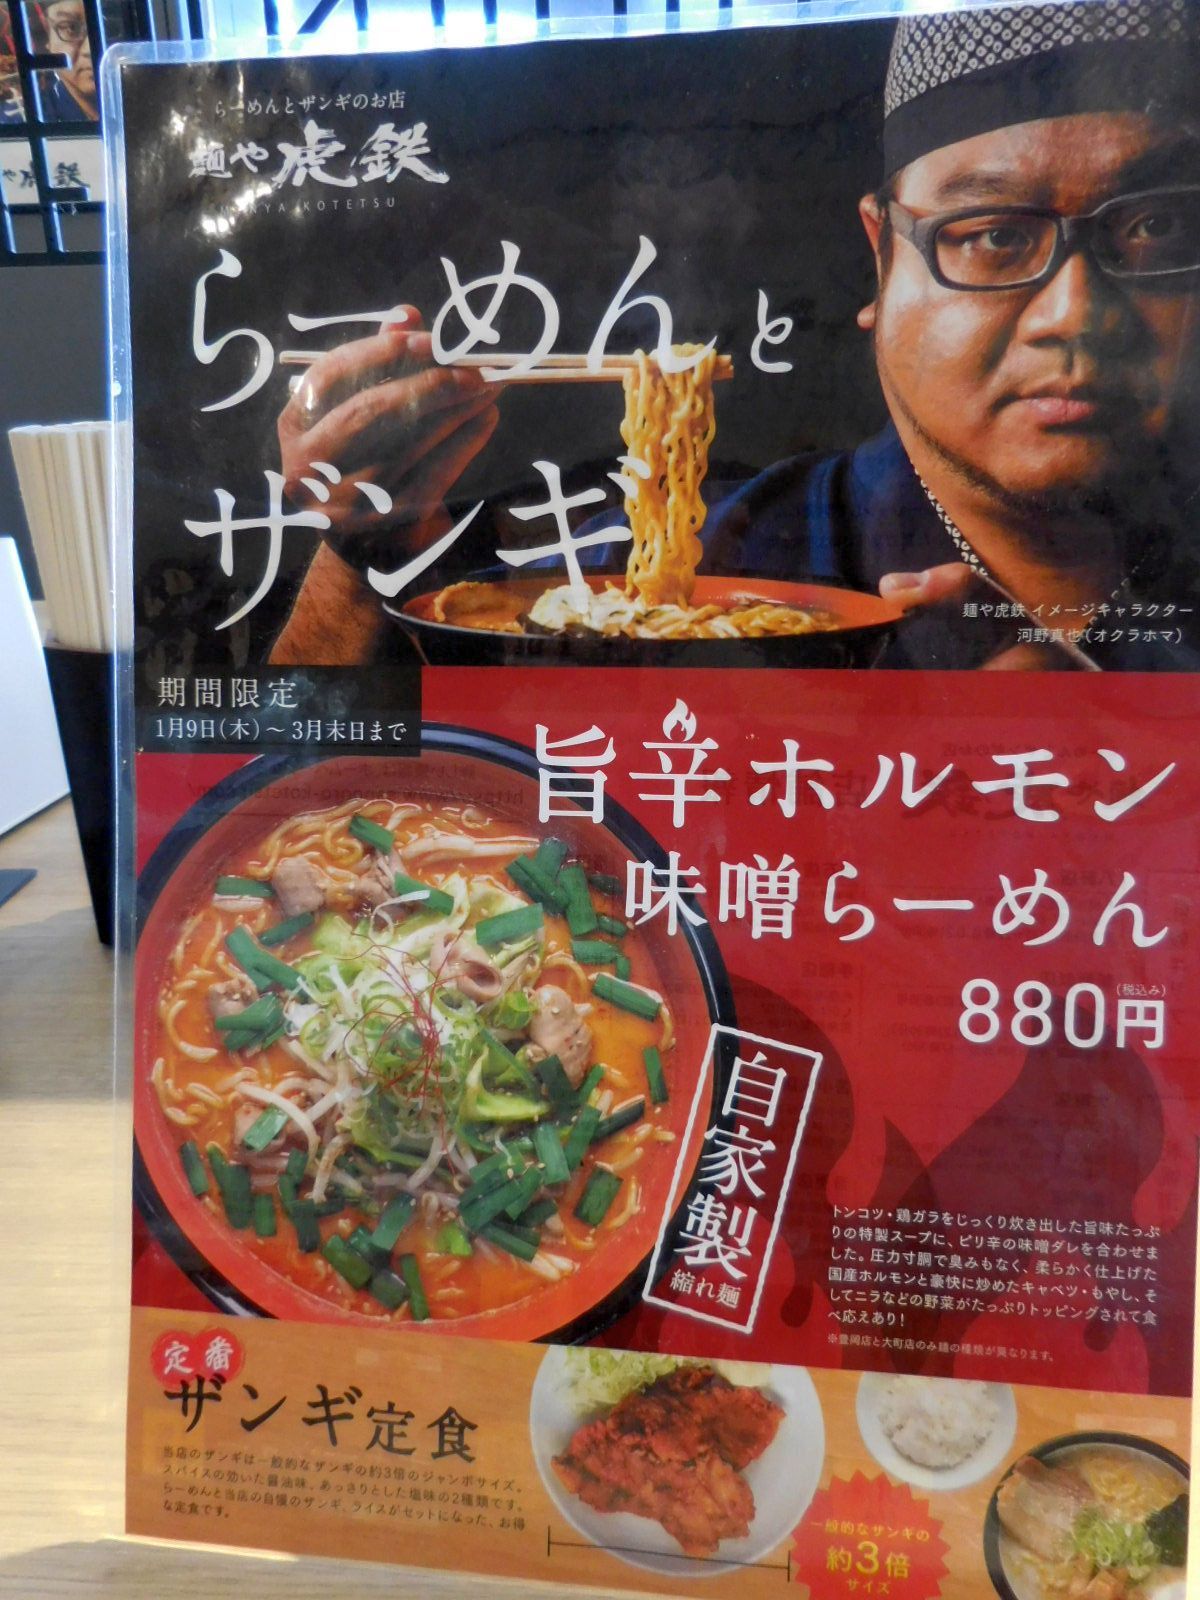 麺や 虎鉄 豊岡店 旭川 ラーメン Hihofrogのブログ 楽天ブログ